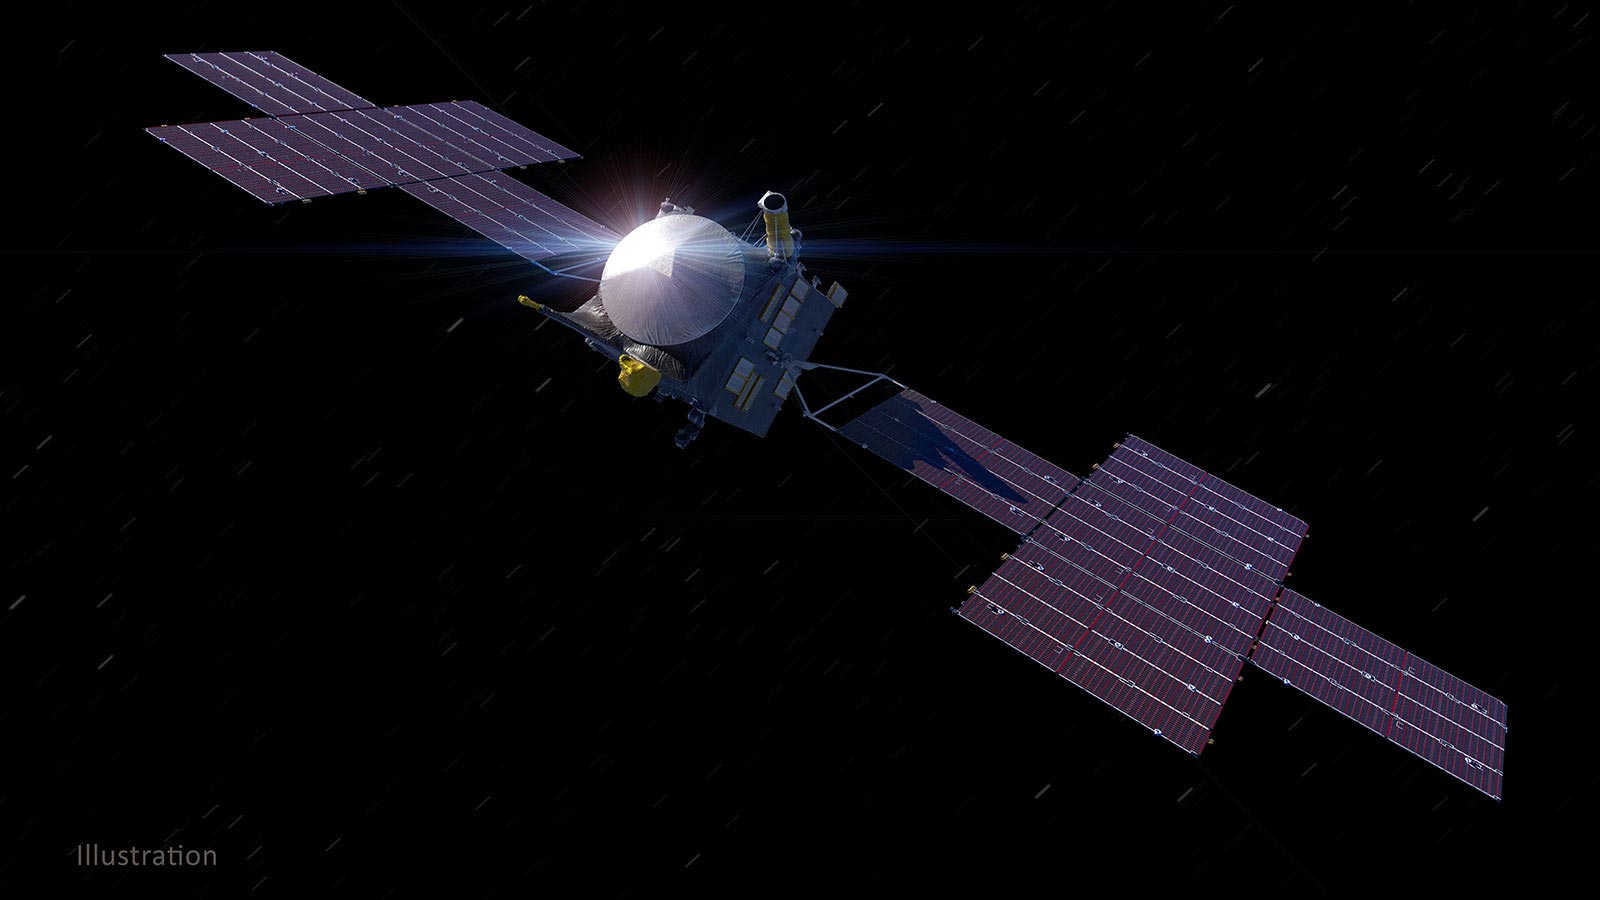 La NASA psychologique obtient d’énormes panneaux solaires pour un voyage de 1,5 milliard de miles vers un astéroïde riche en métaux